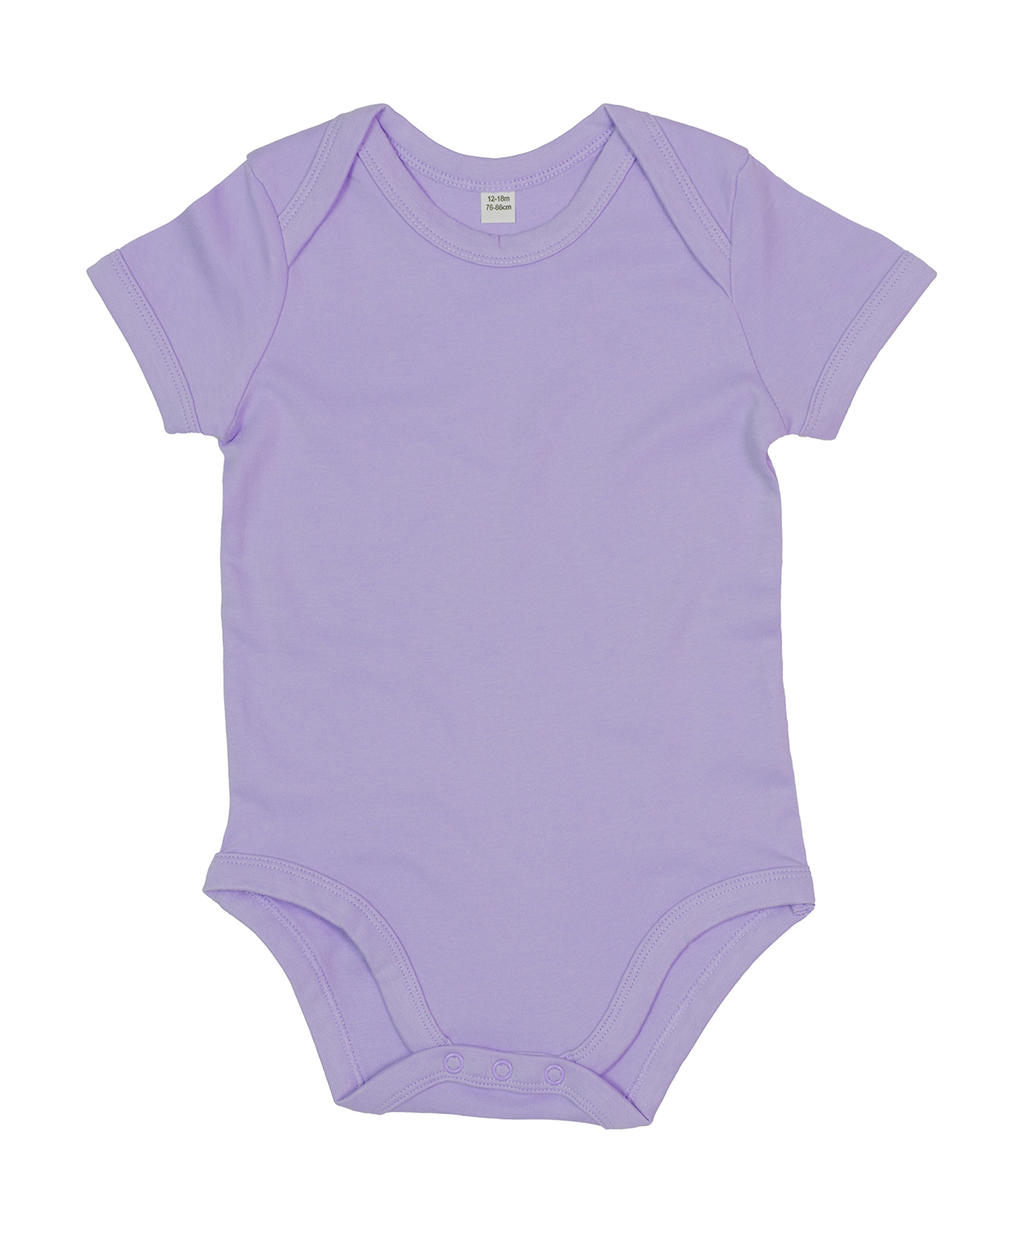  Baby Bodysuit in Farbe Lavender Organic